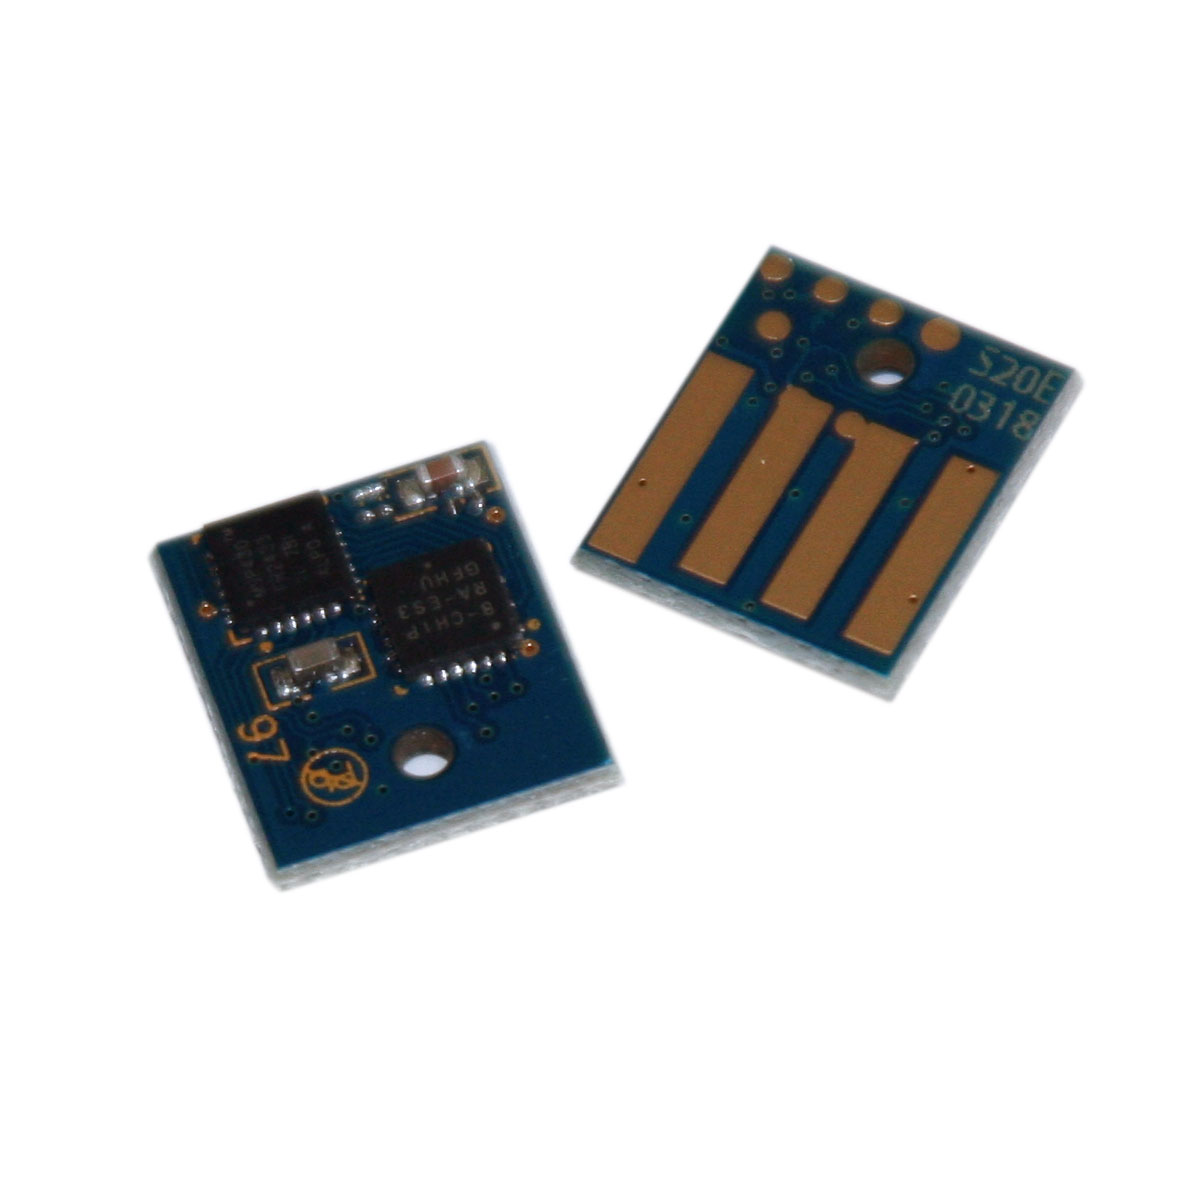 50f2h00 (502h) toner chip for lexmark